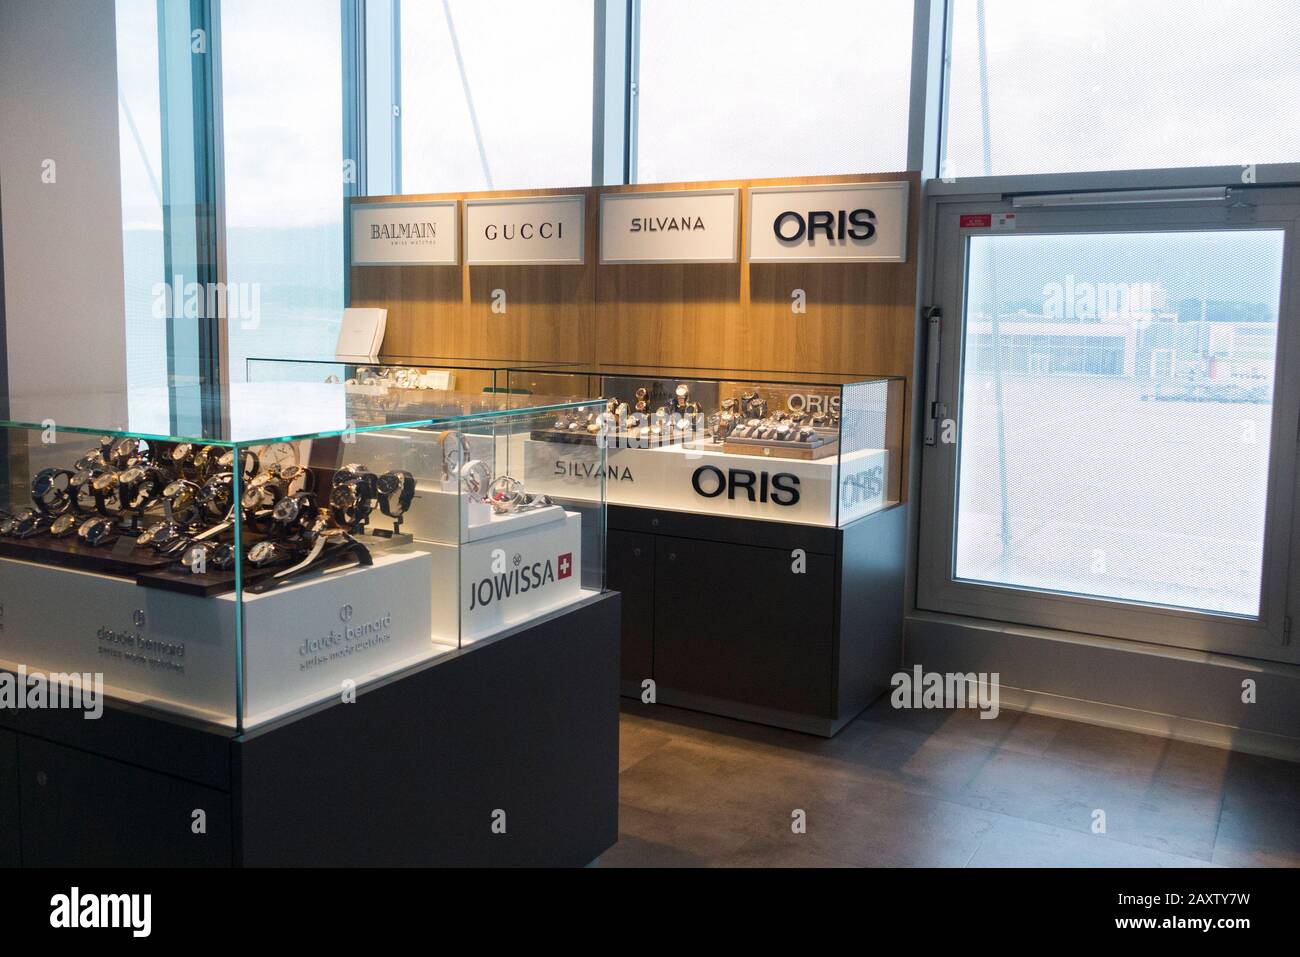 Negozio di orologi duty free che vende orologi svizzeri come Oris, prodotti da produttori in Svizzera, e il marchio italiano Gucci, all'aeroporto di Ginevra. (112) Foto Stock